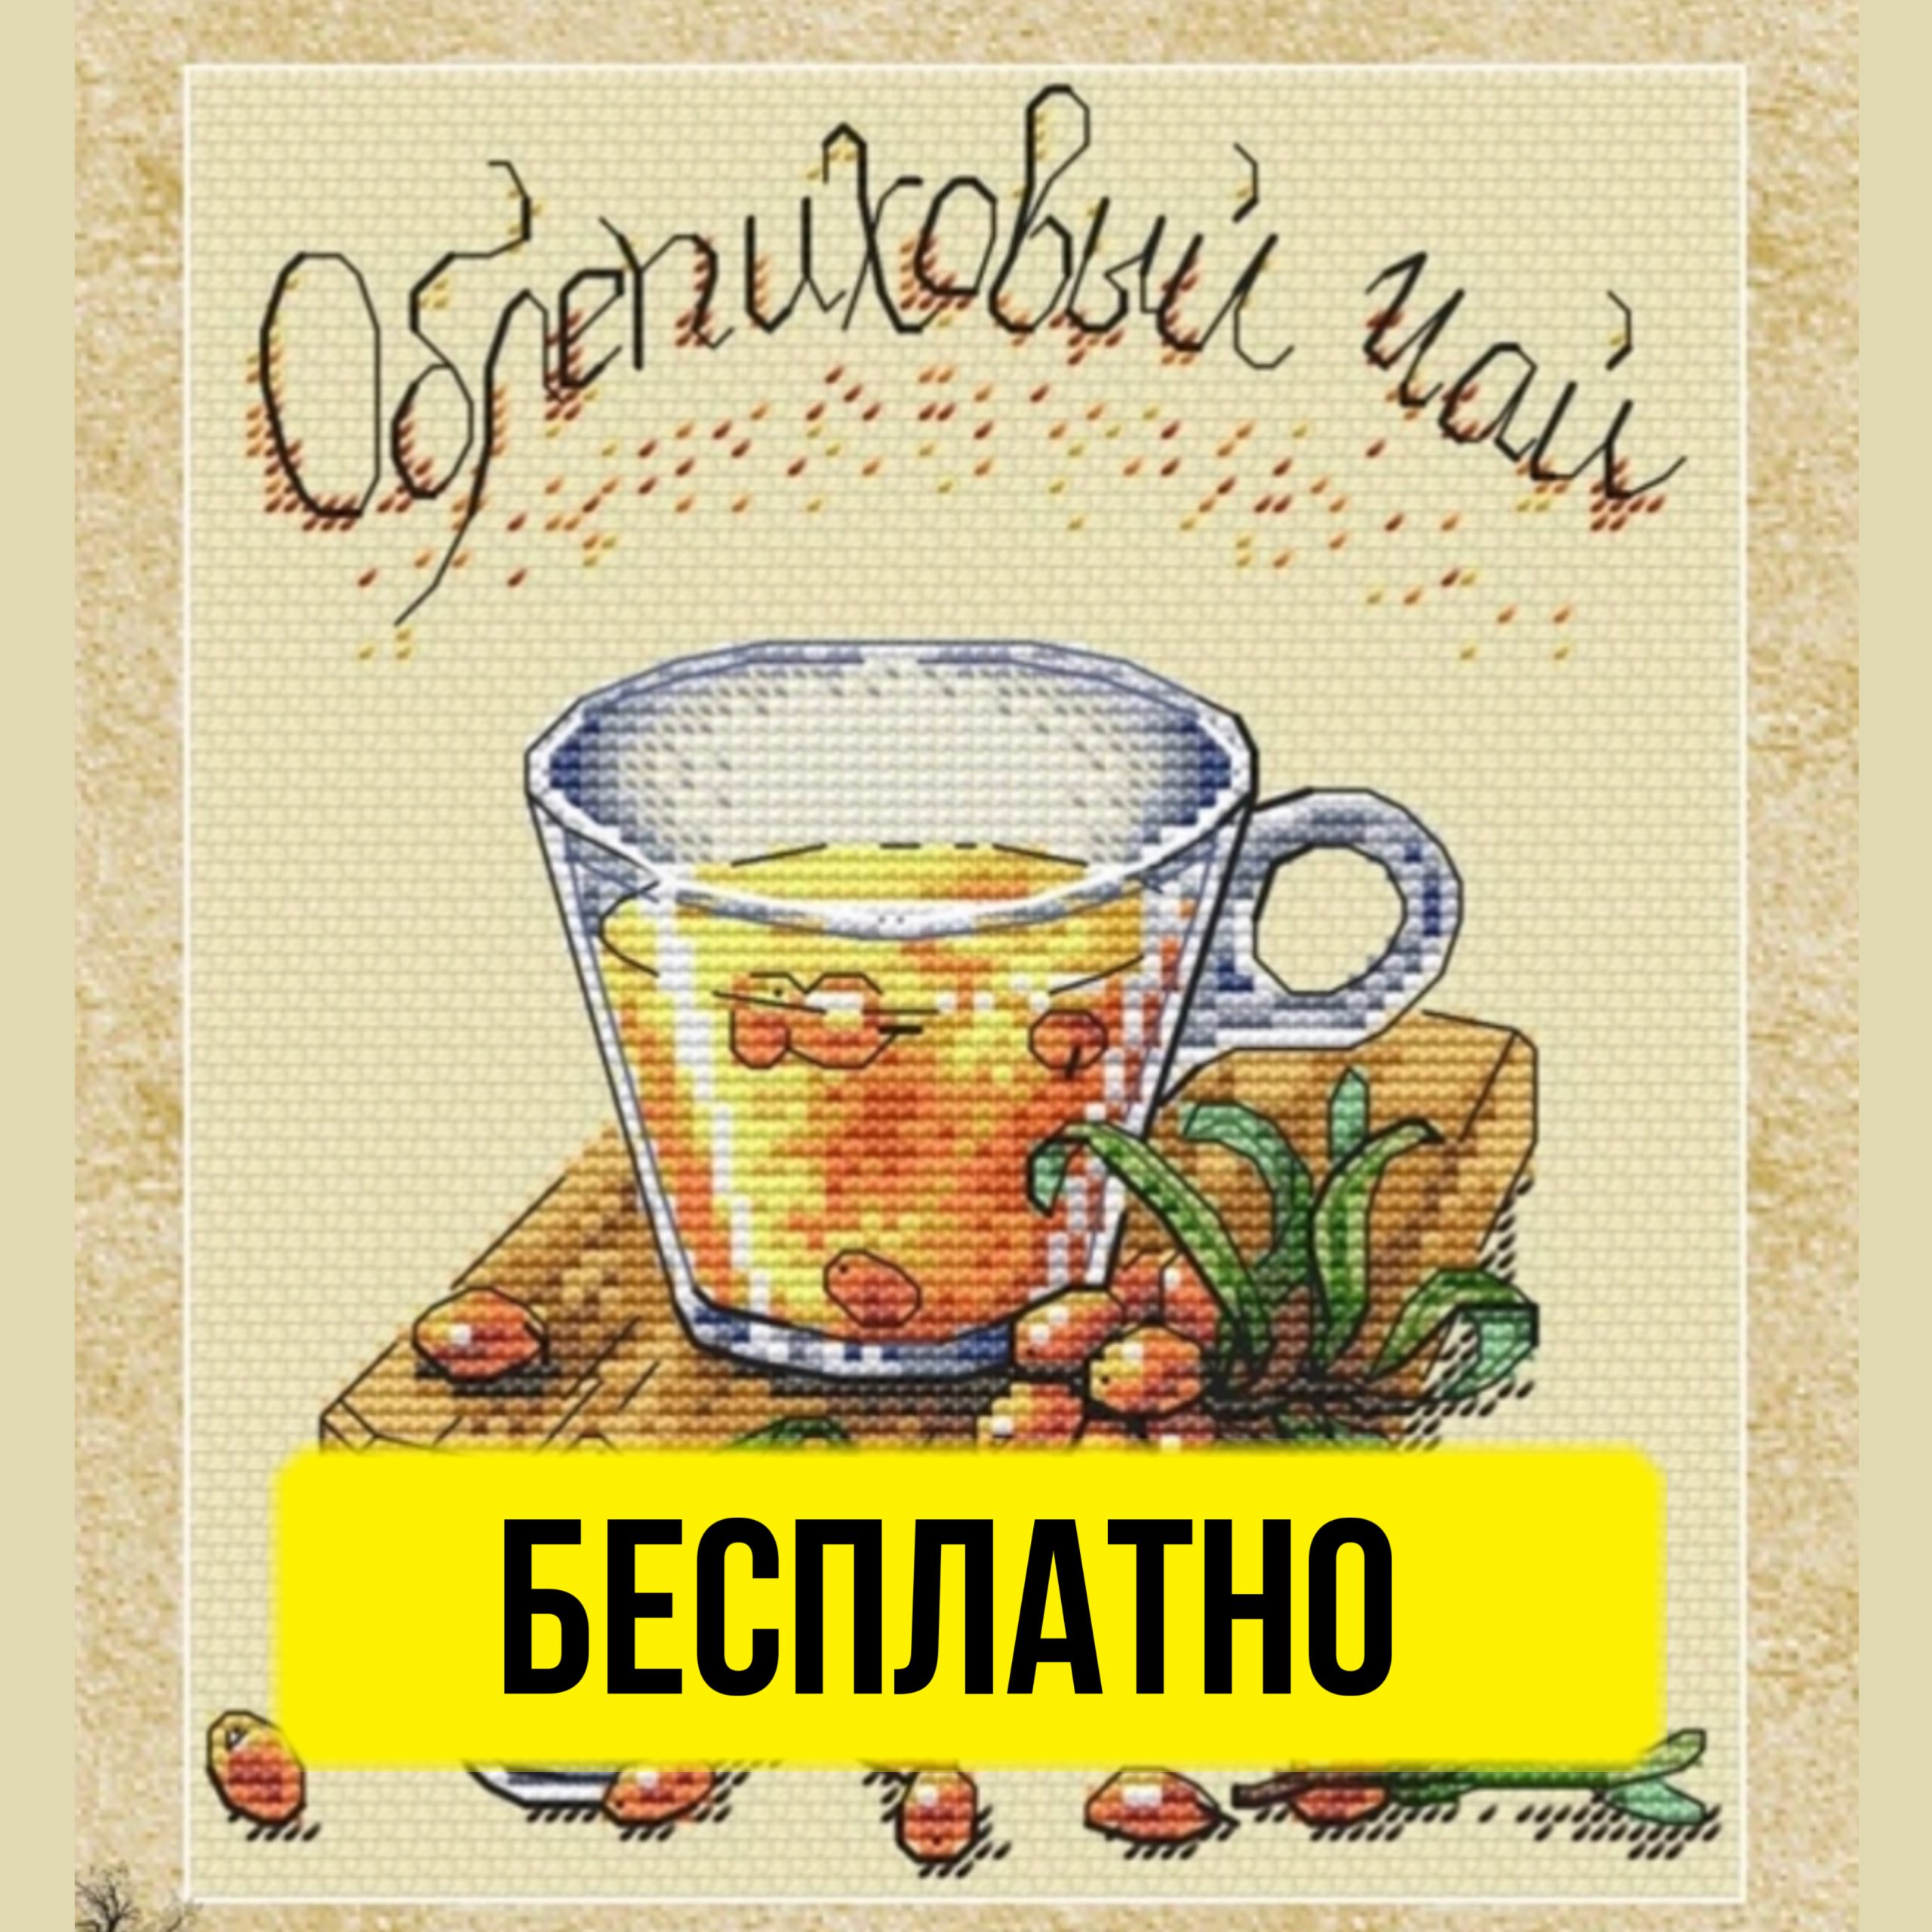 Бесплатная схема вышивания крестиком с облепиховым чаем от Юлии Тарасовой.